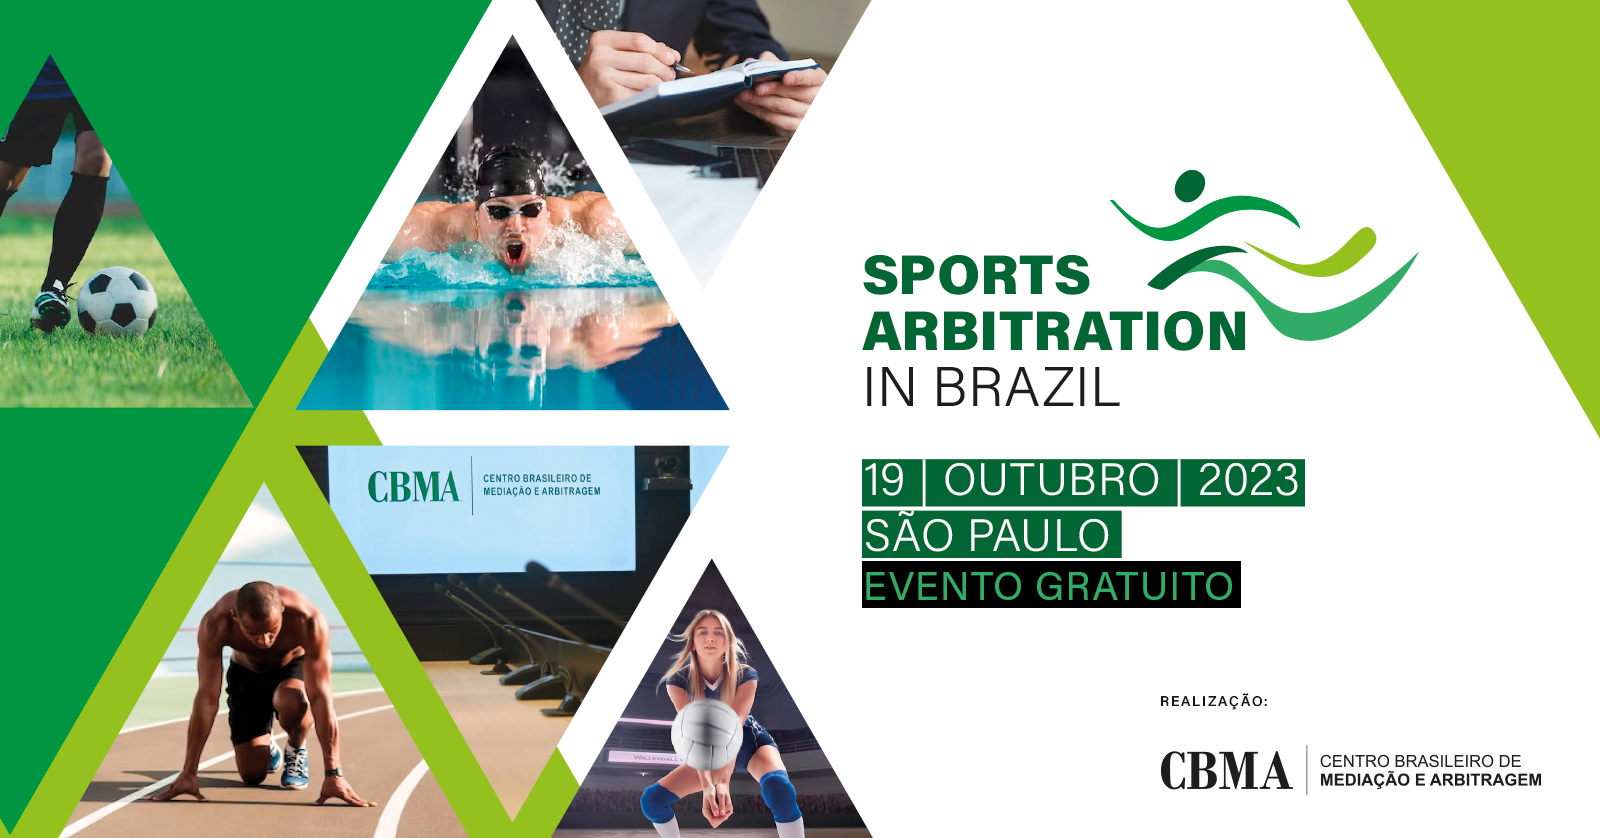 Sports Arbitration in Brazil